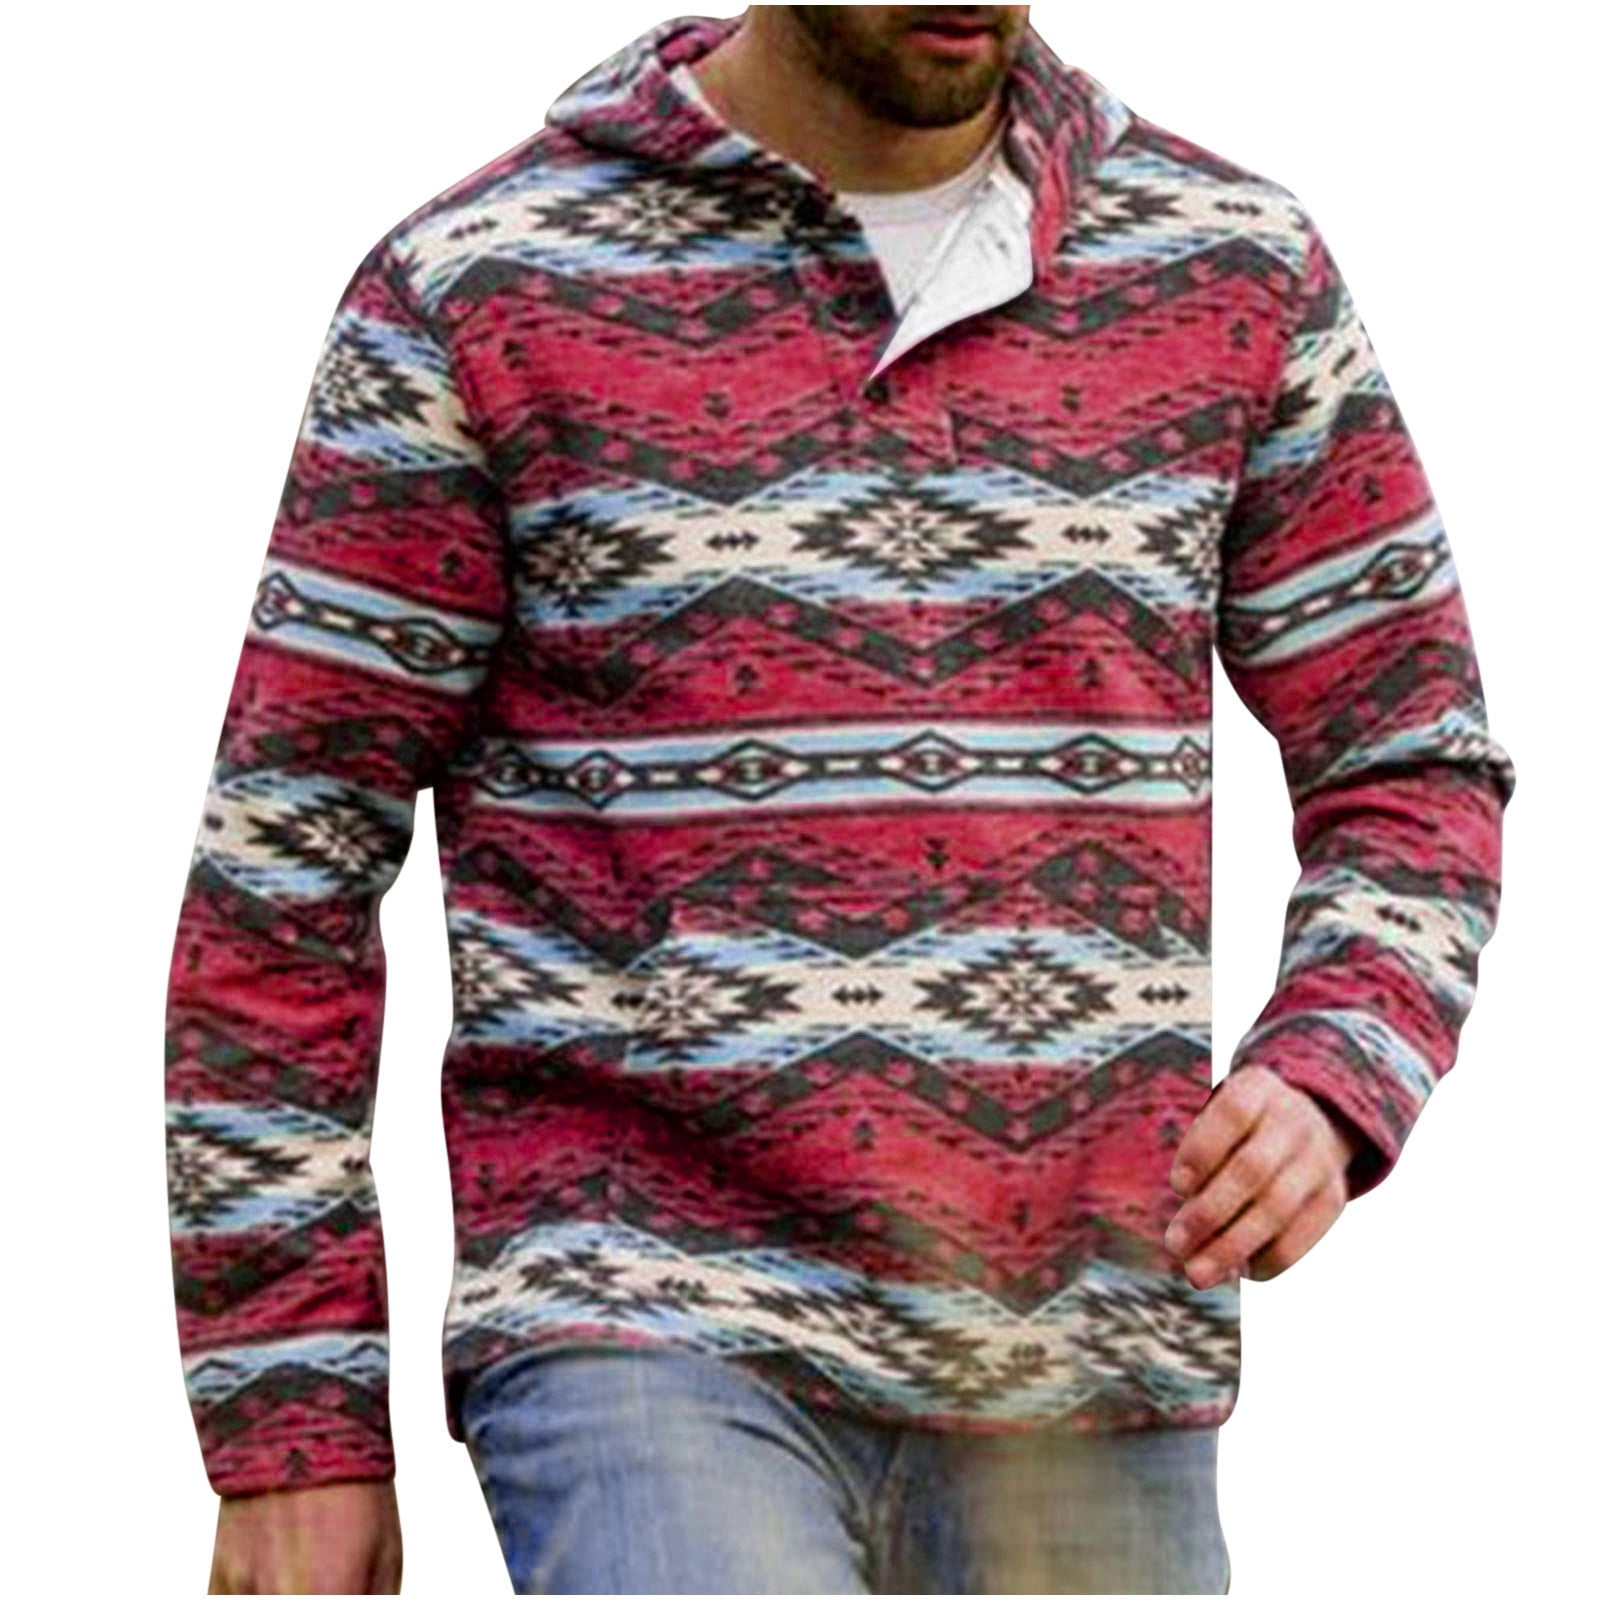 Fanxing Clearance Deals Men's Western Aztec Sweatshirts Outdoor Ethnic ...